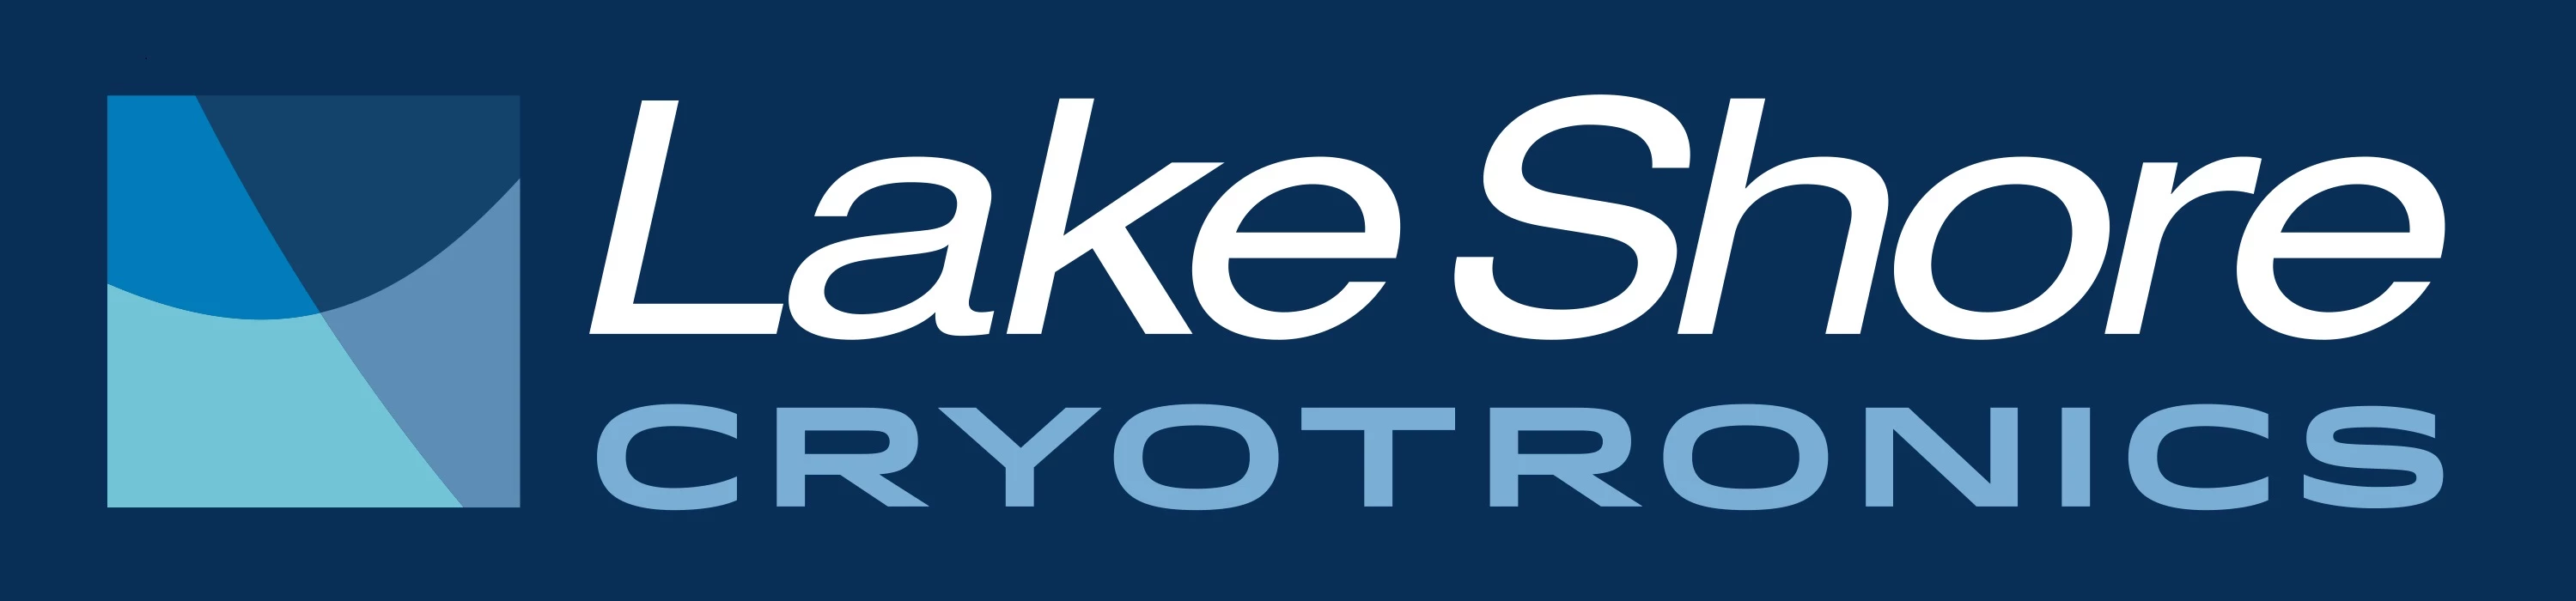 Lake Shore Cryotronics Logo, links to Lake Shore Cryotronics website